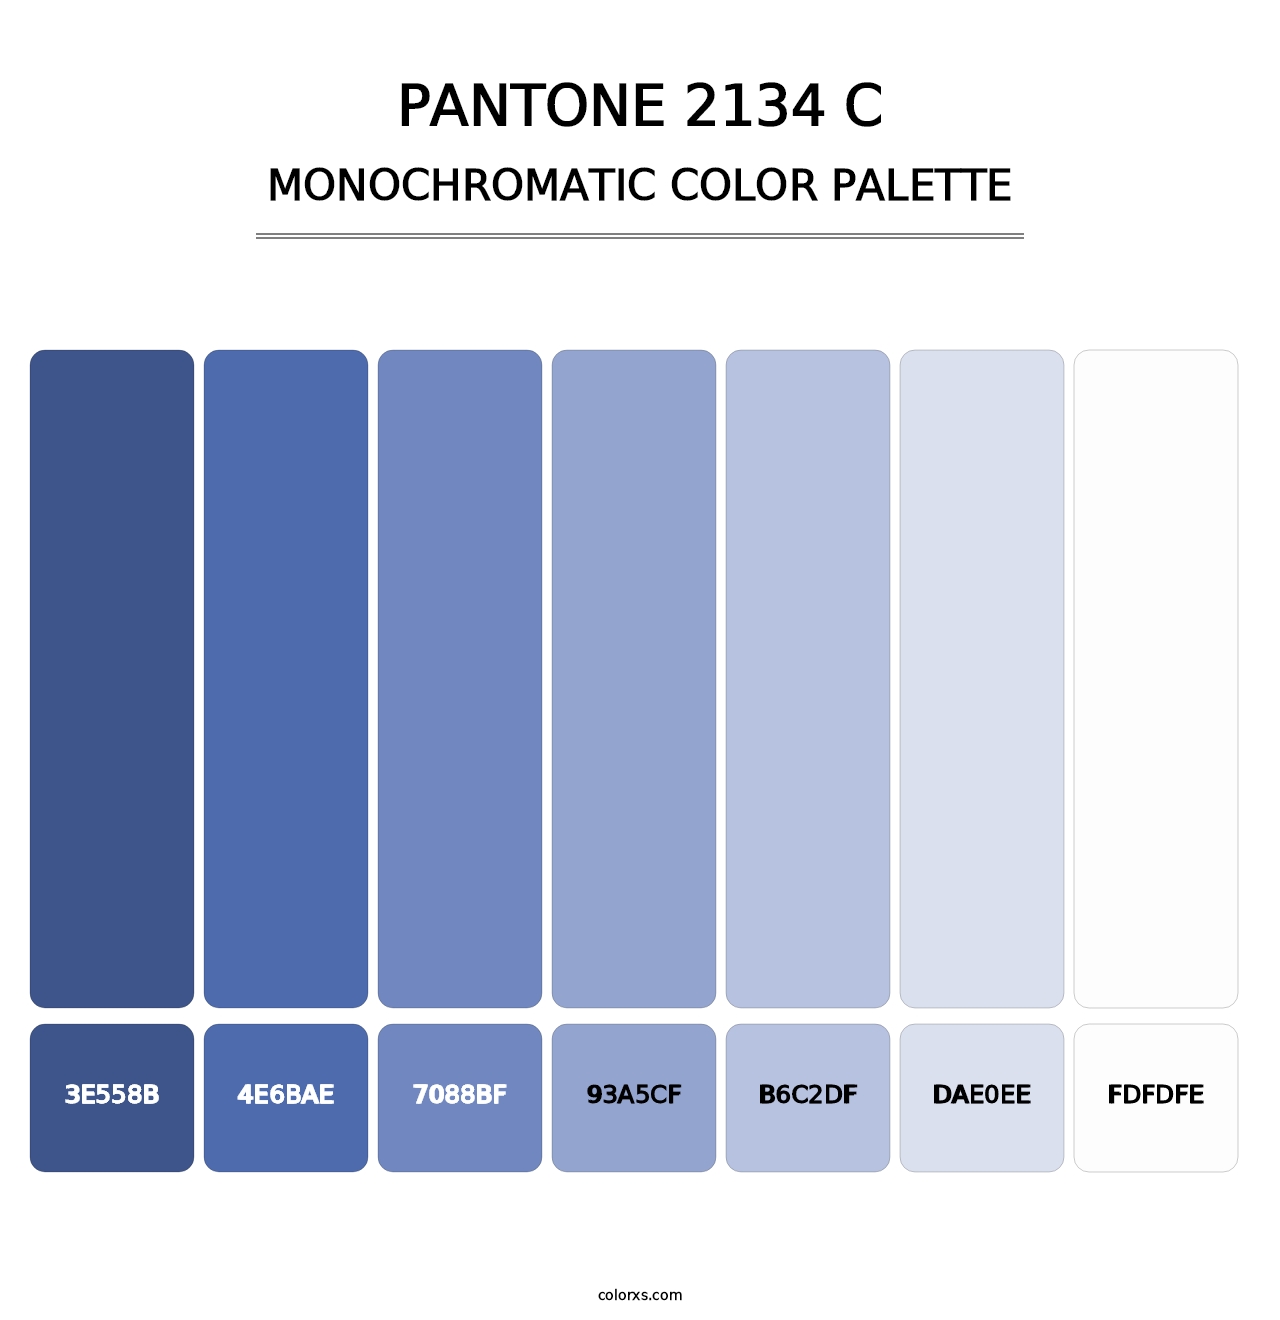 PANTONE 2134 C - Monochromatic Color Palette